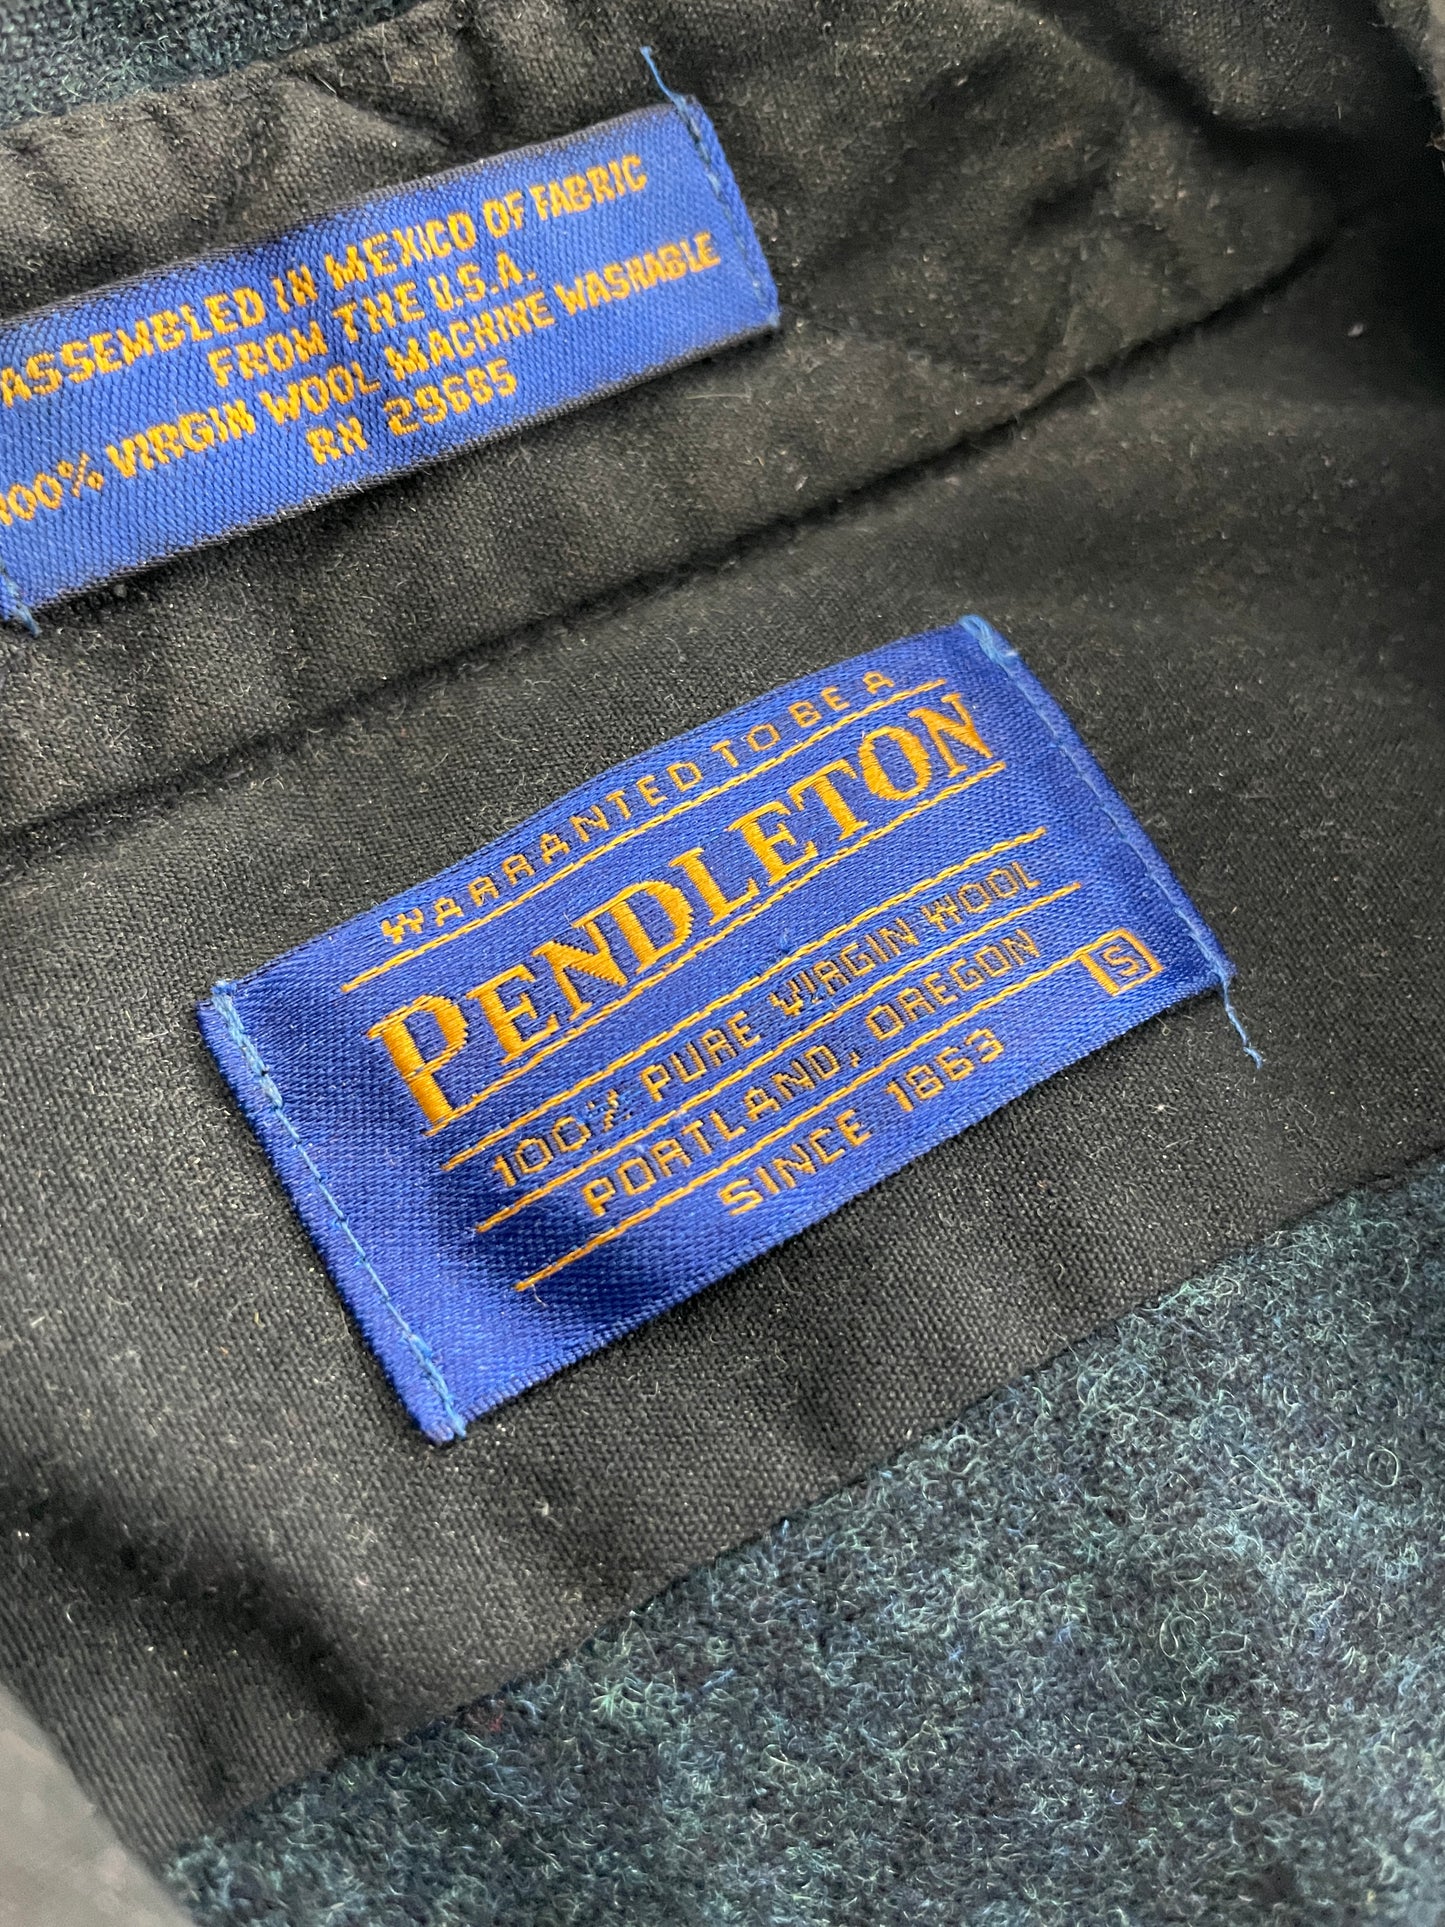 Pendelton Shirt [S]